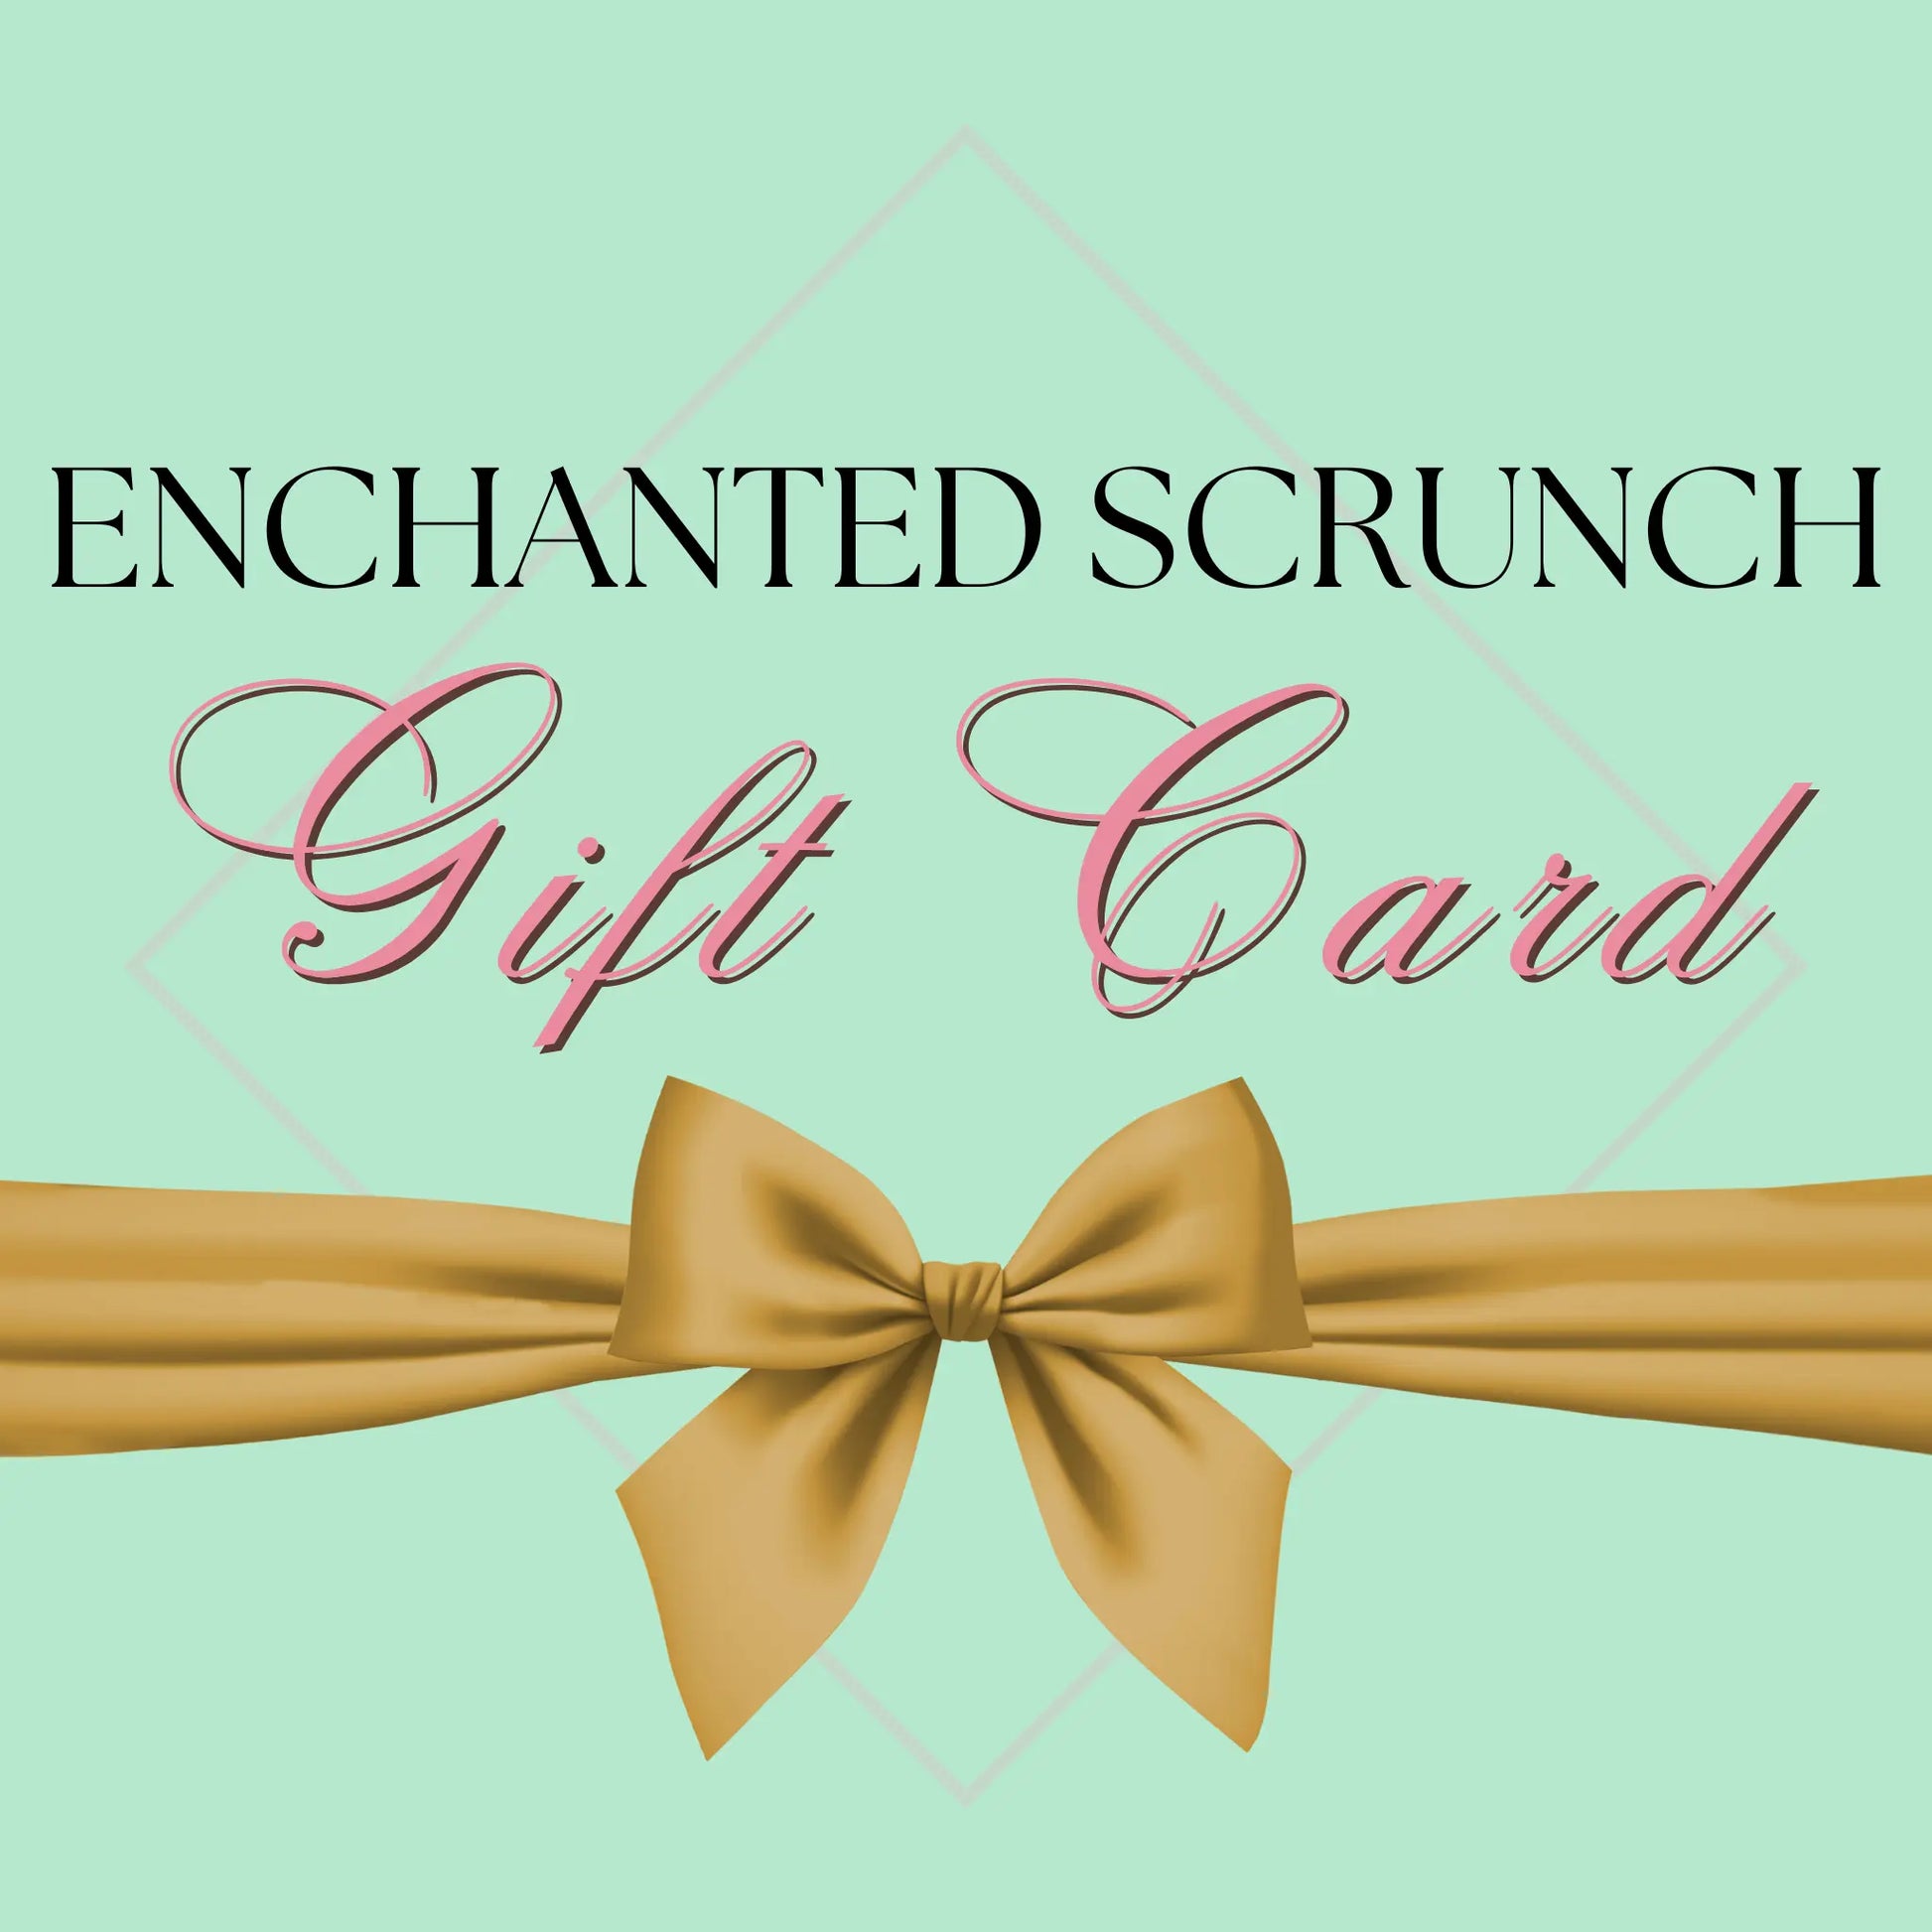 Enchanted Scrunch Gift Card enchantedscrunch